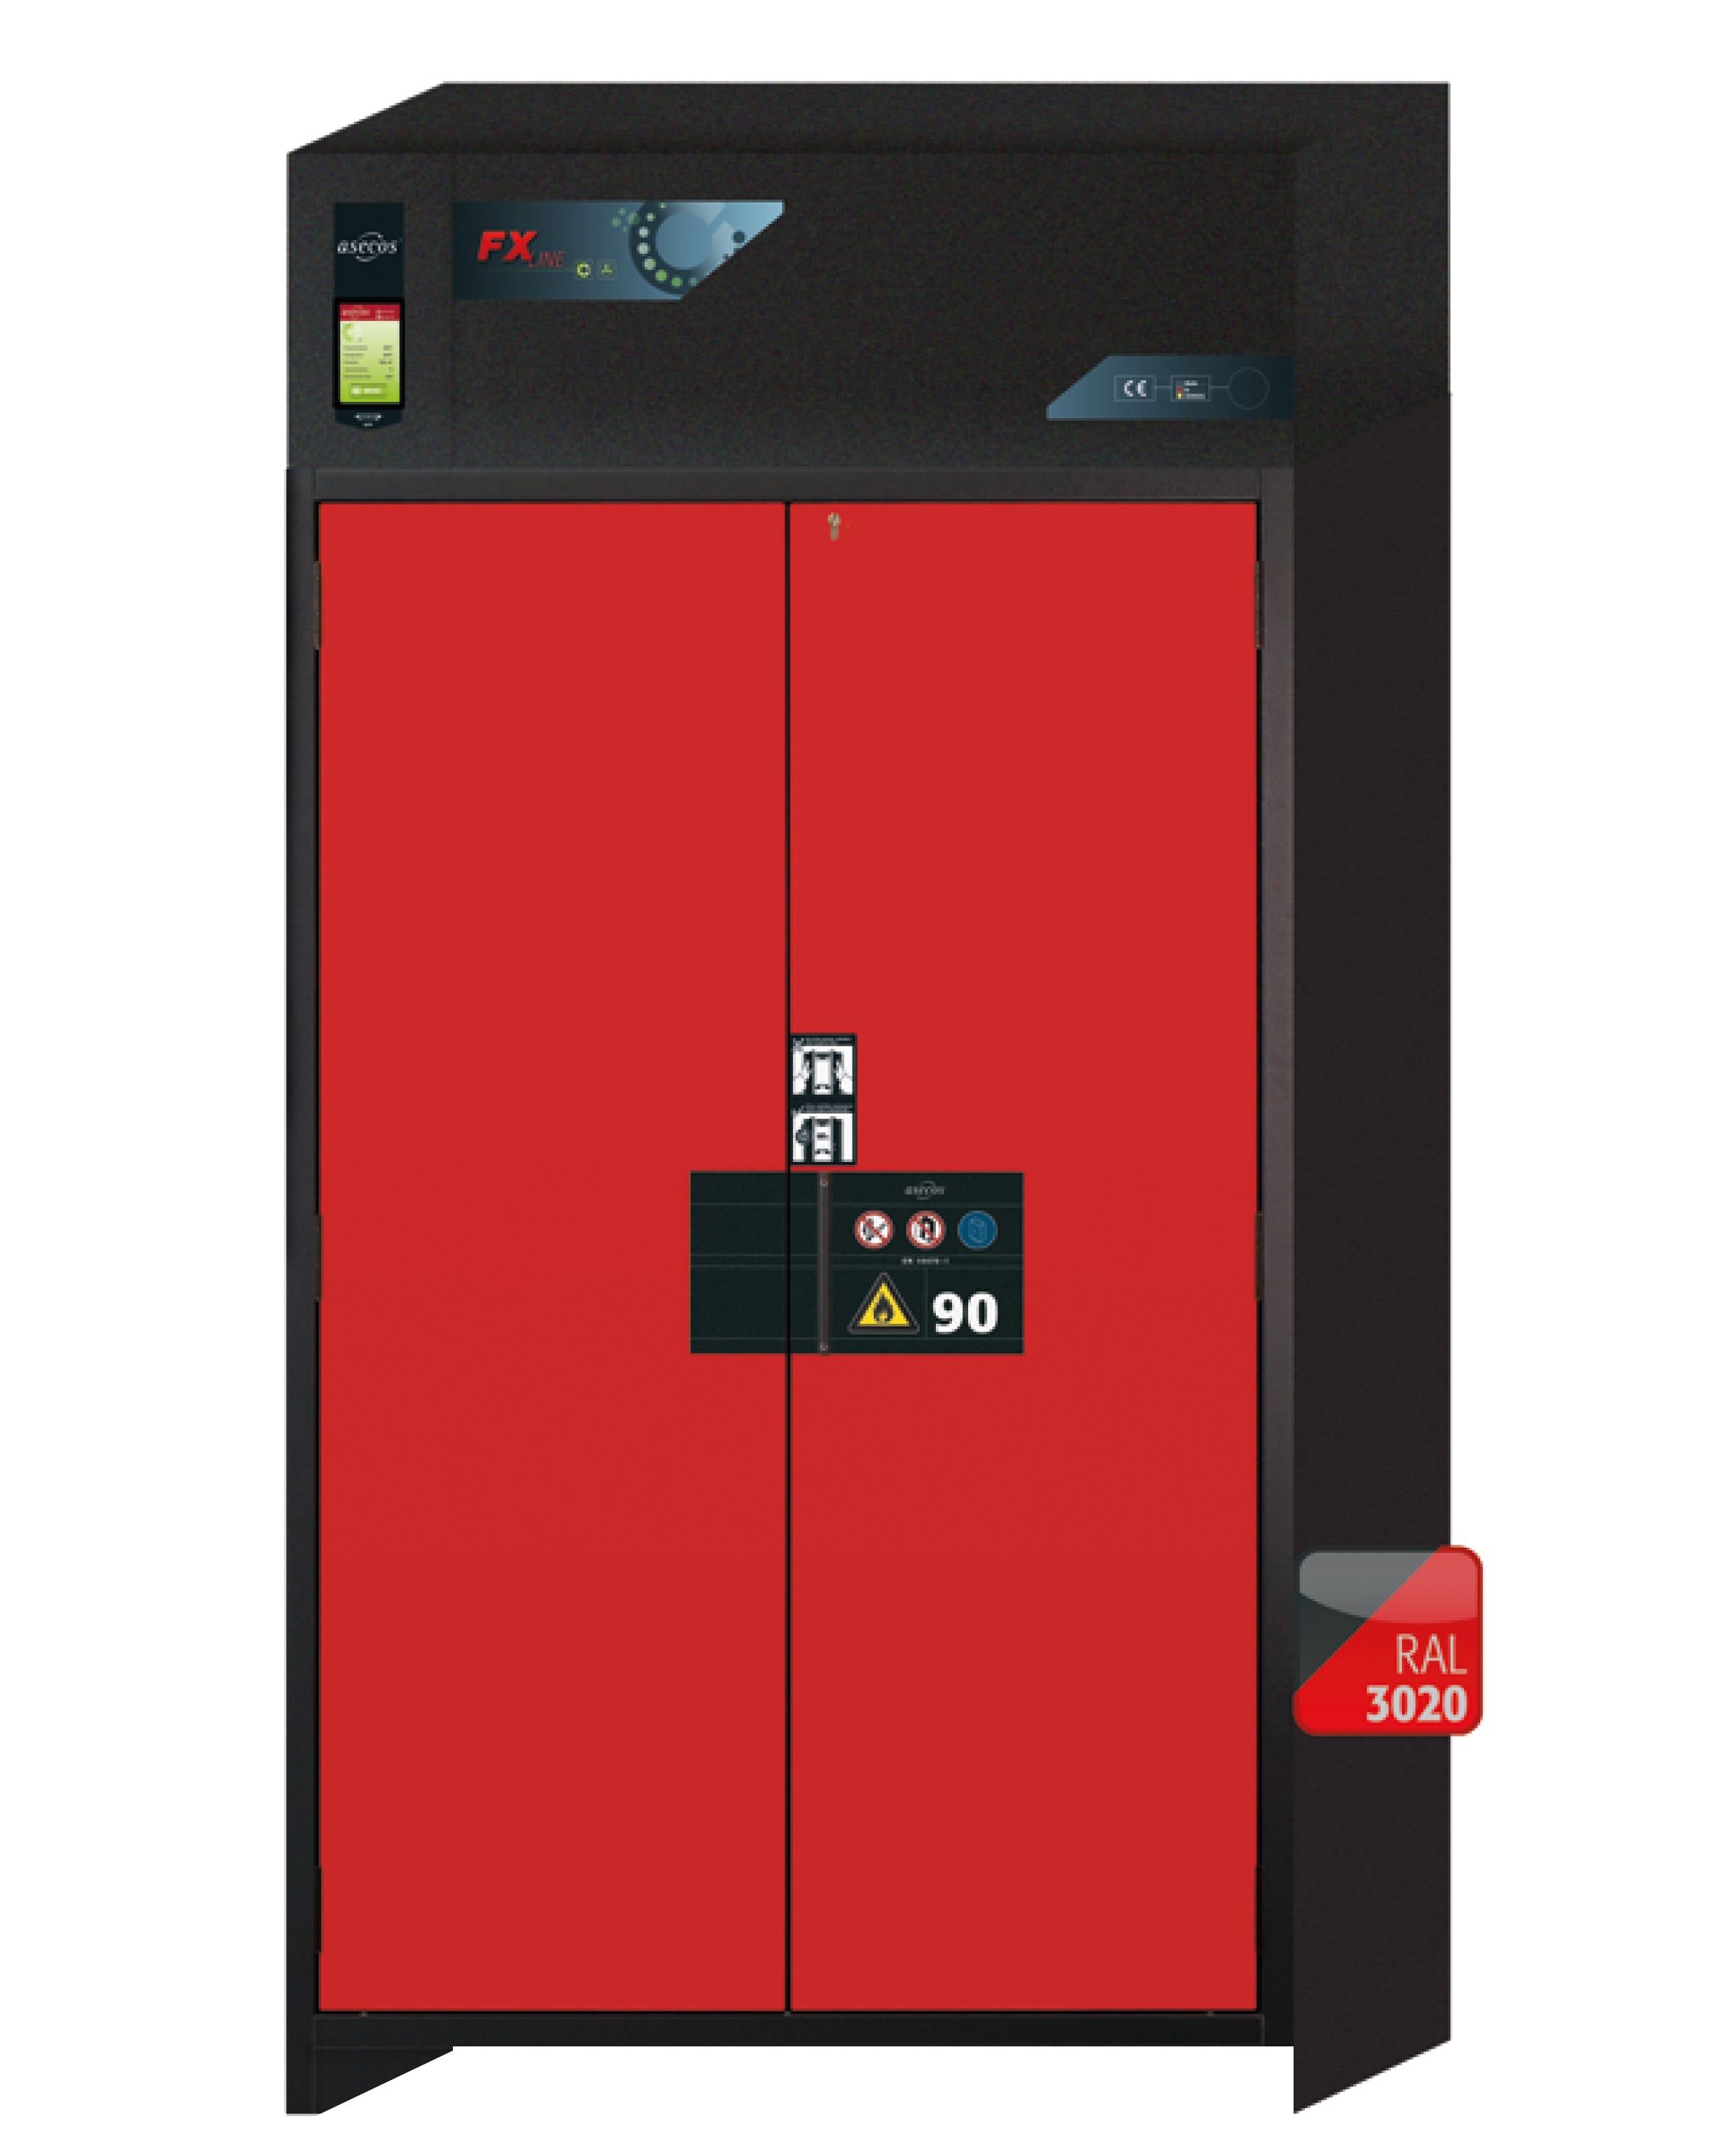 Armoire de filtration d'air de recirculation de type 90 FX-PEGASUS-90 modèle FX90.229.120.WDAC en rouge signalisation RAL 3020 avec 2x pieds de plateau standard (tôle d'acier)